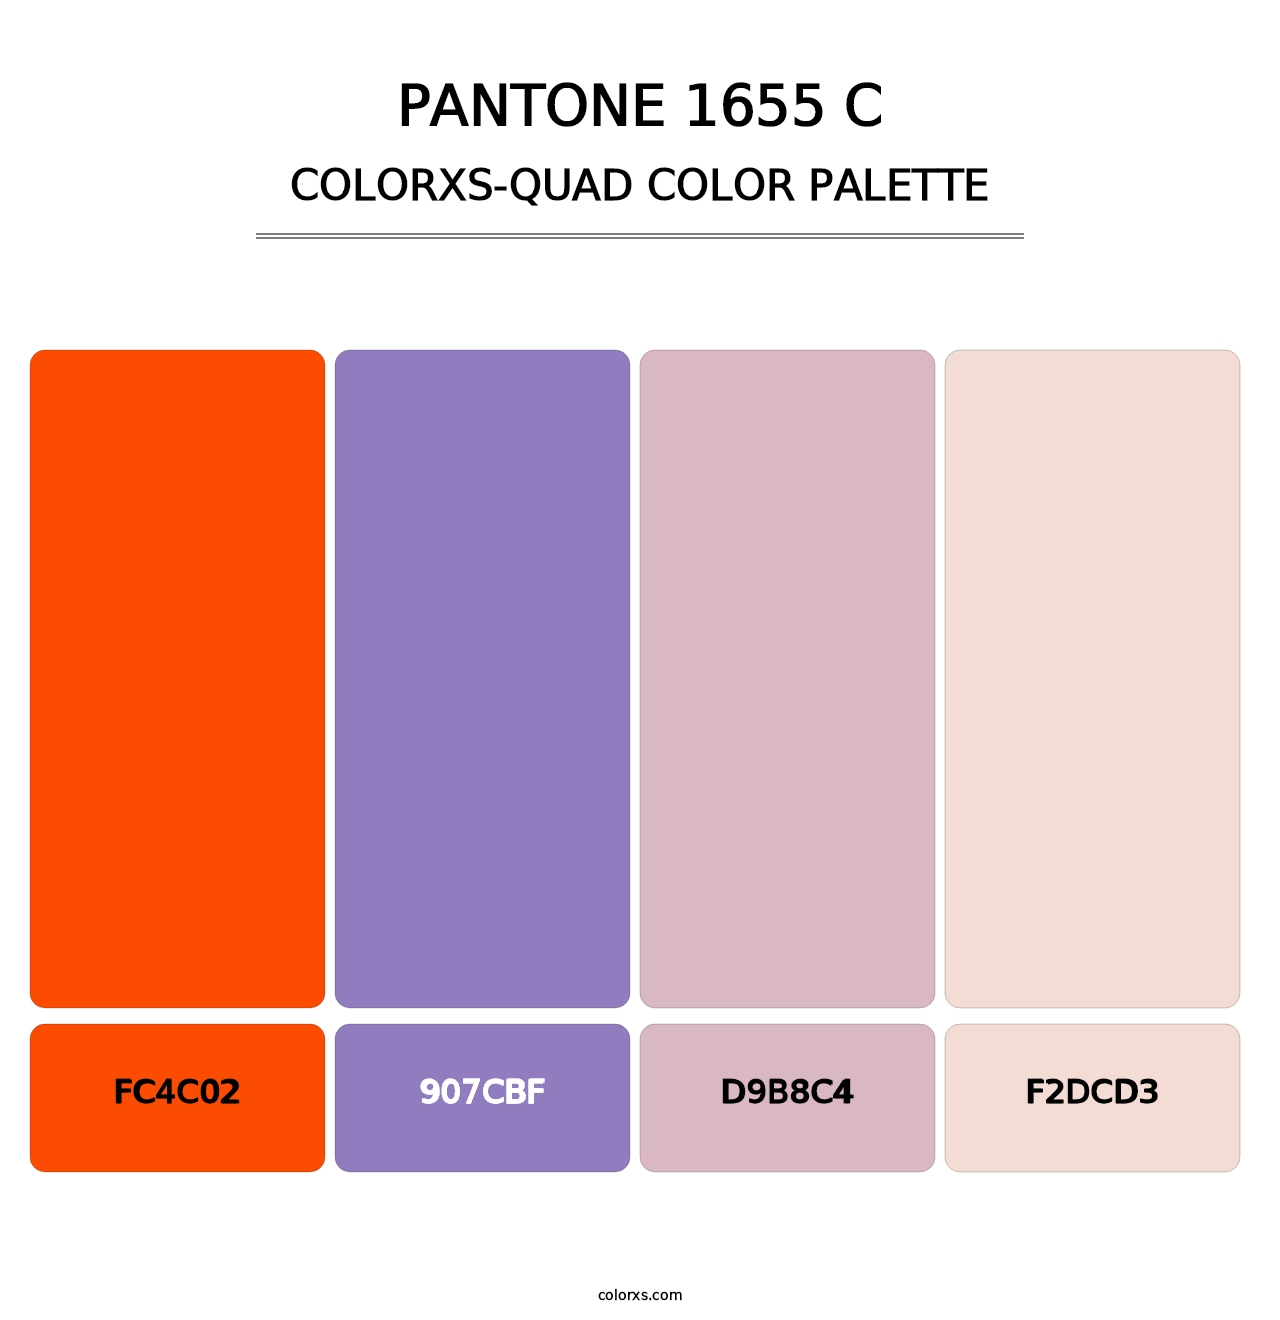 PANTONE 1655 C - Colorxs Quad Palette